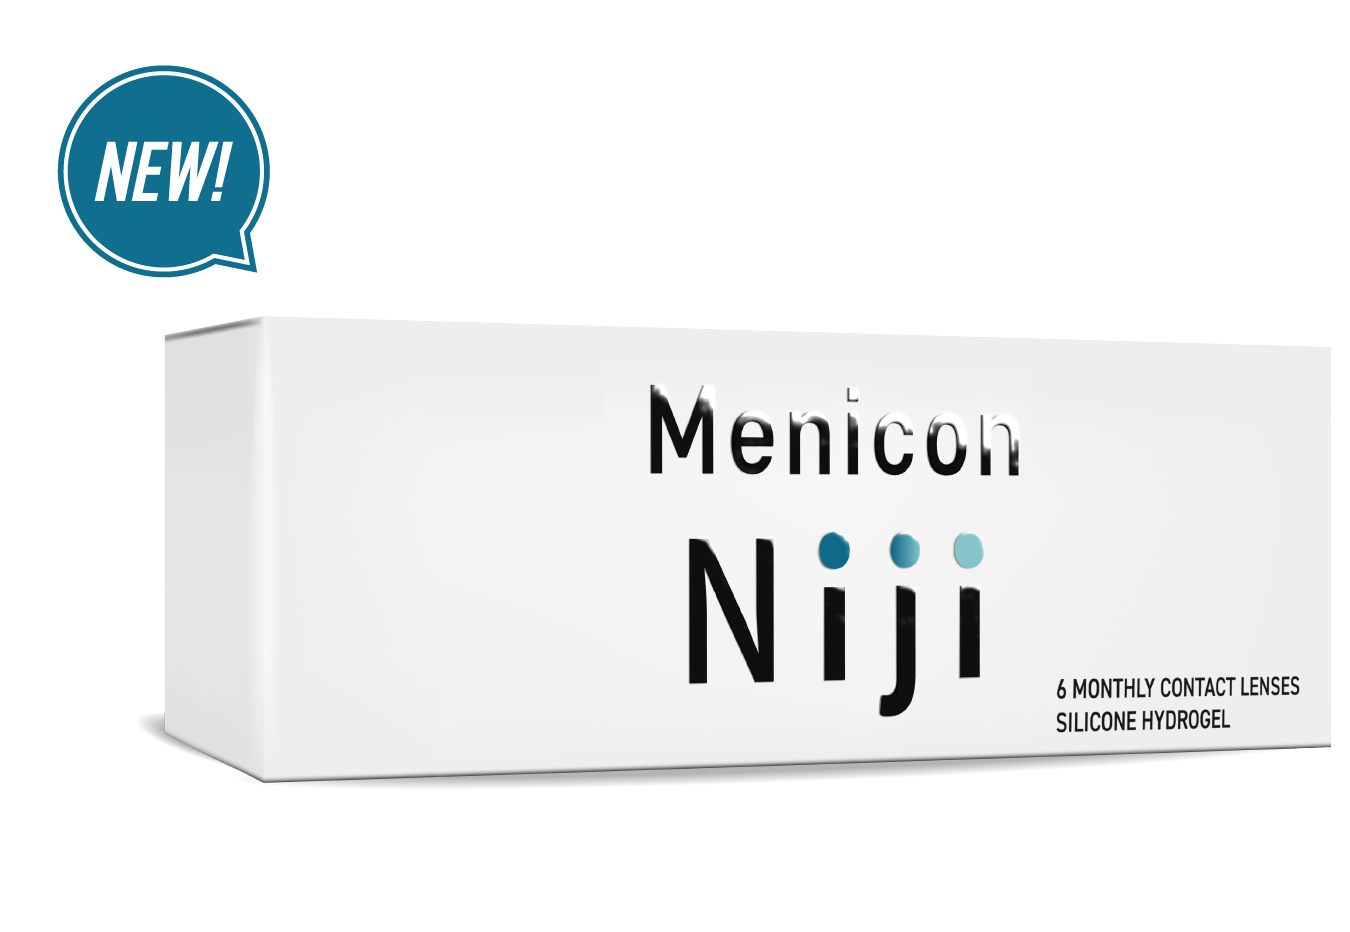 New! Menicon Niji